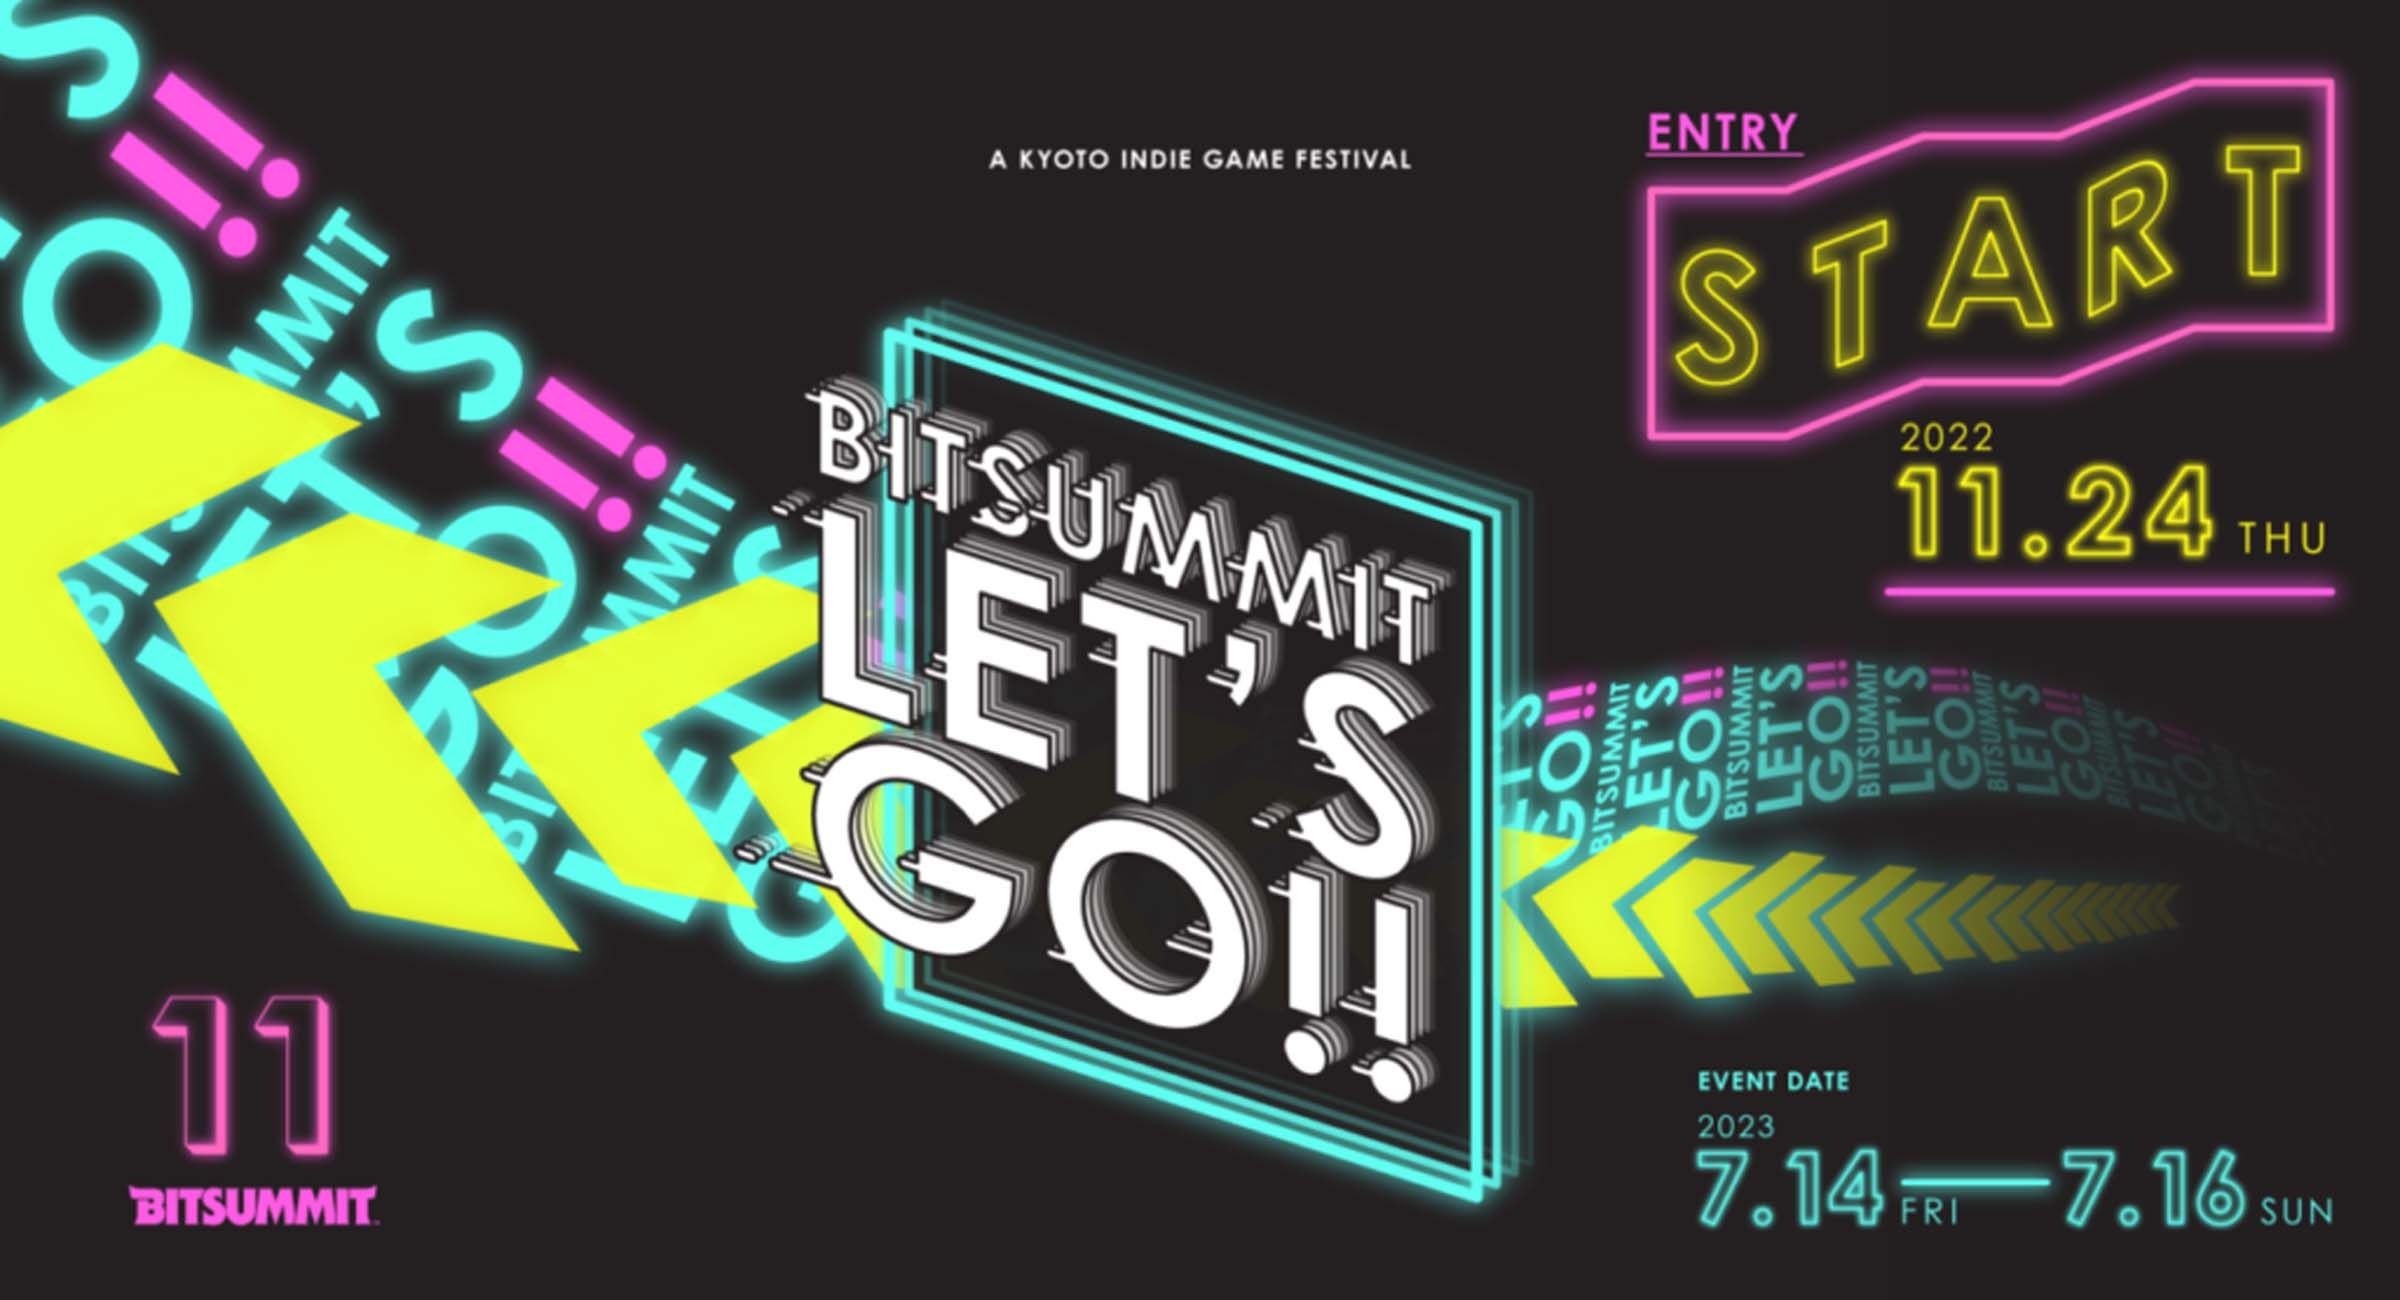 BitSummit Festival 2023 in Kyoto, Japan